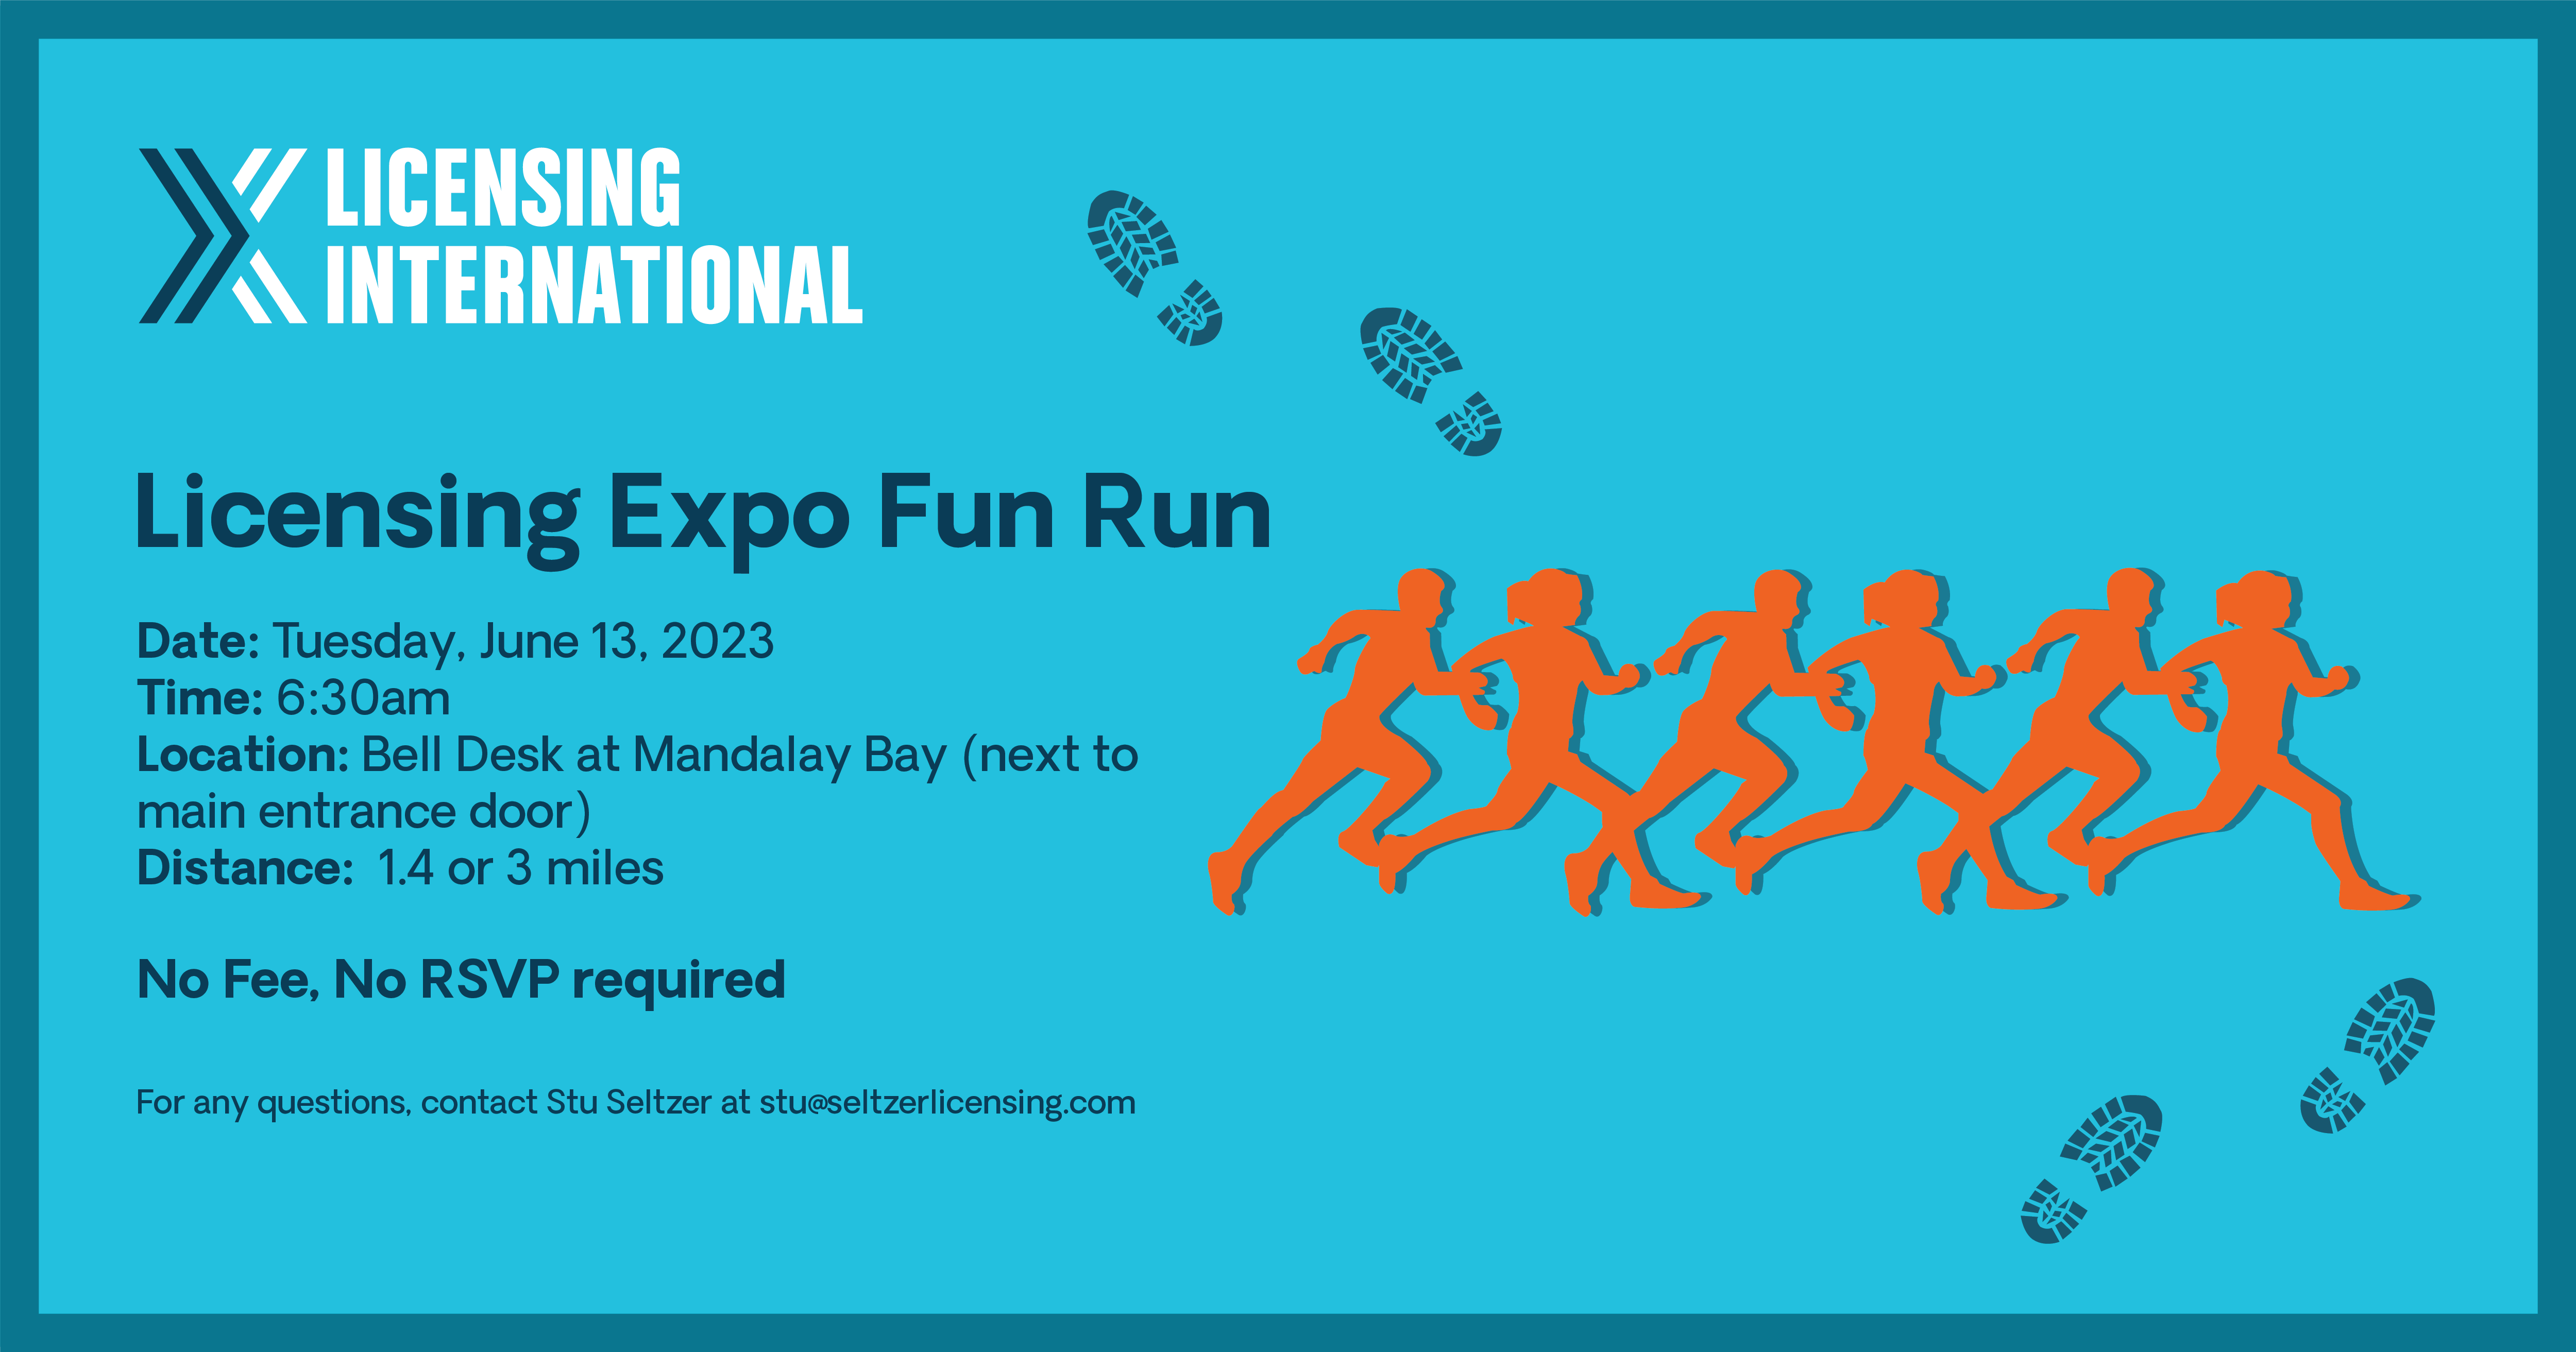 Licensing Expo Fun Run image